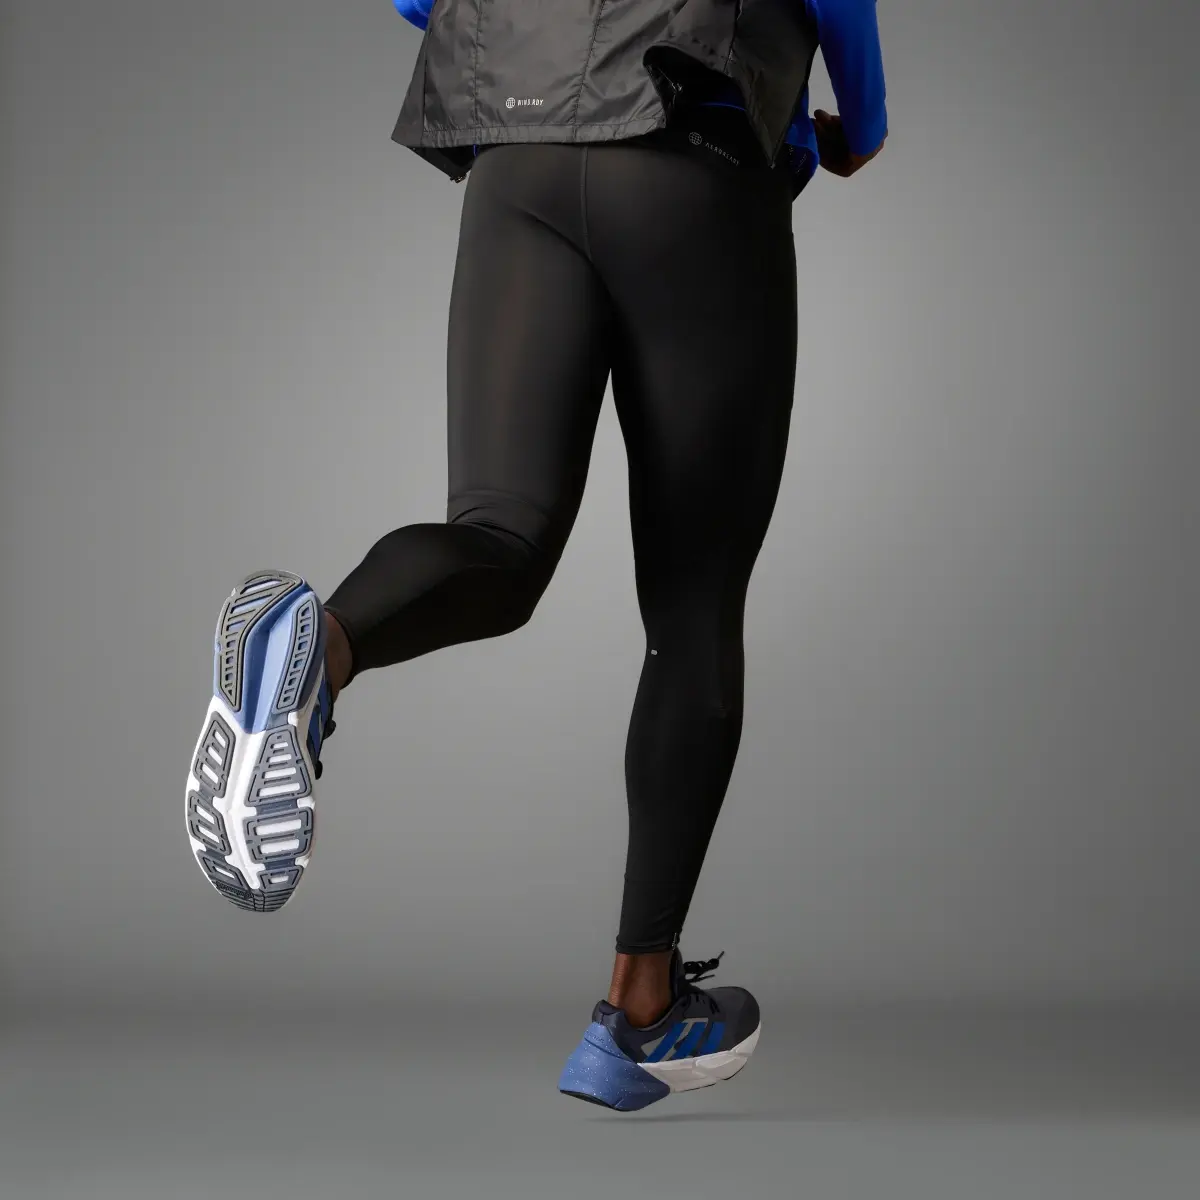 Adidas Leggings Own the Run. 2